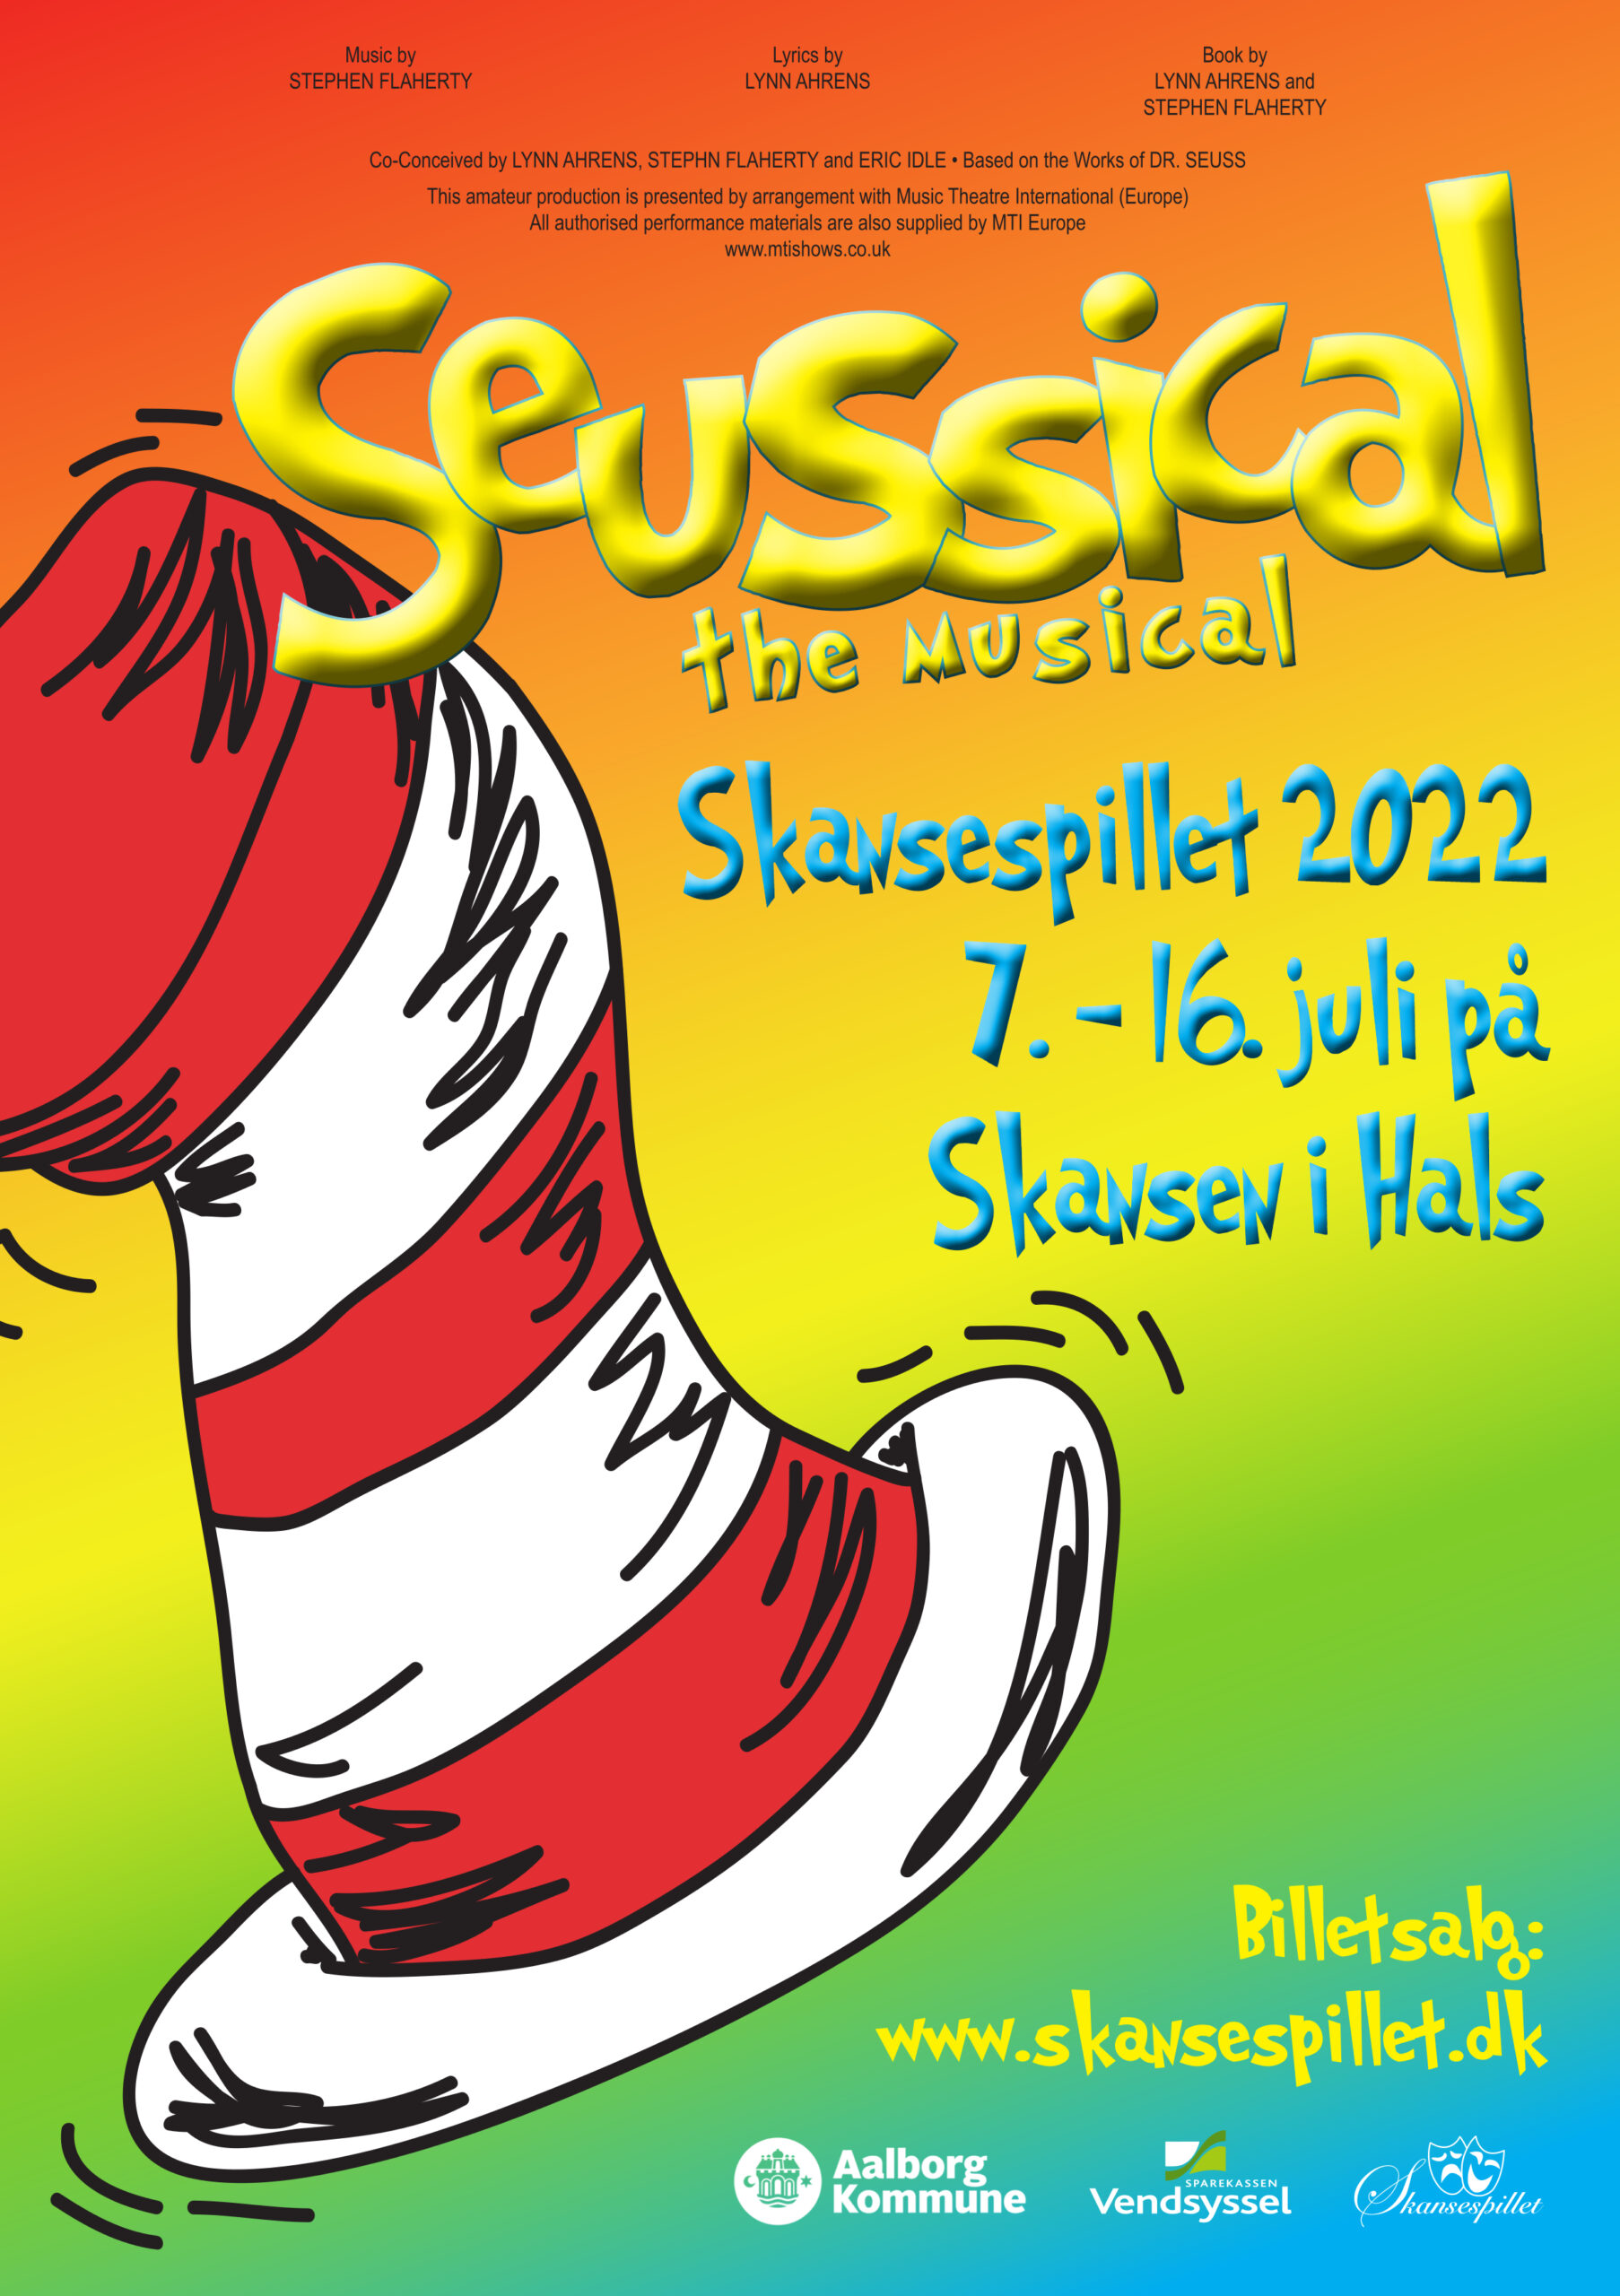 Skansespillet 2022 - Seussical the Musical